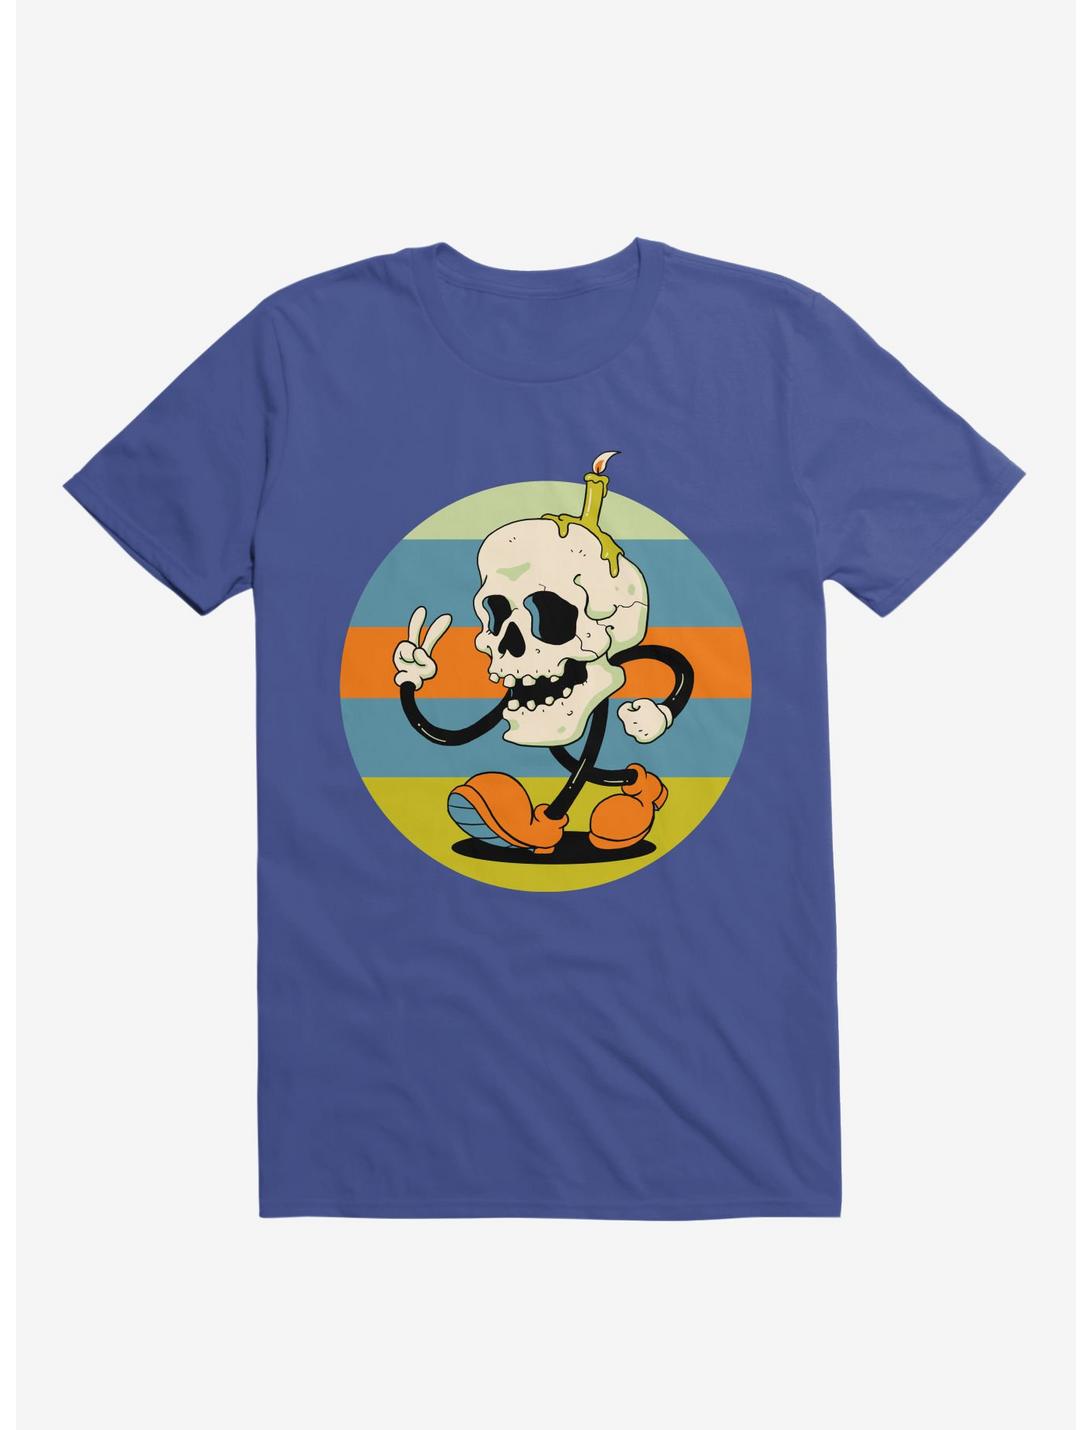 Skull Candle Boy Royal Blue T-Shirt, ROYAL, hi-res